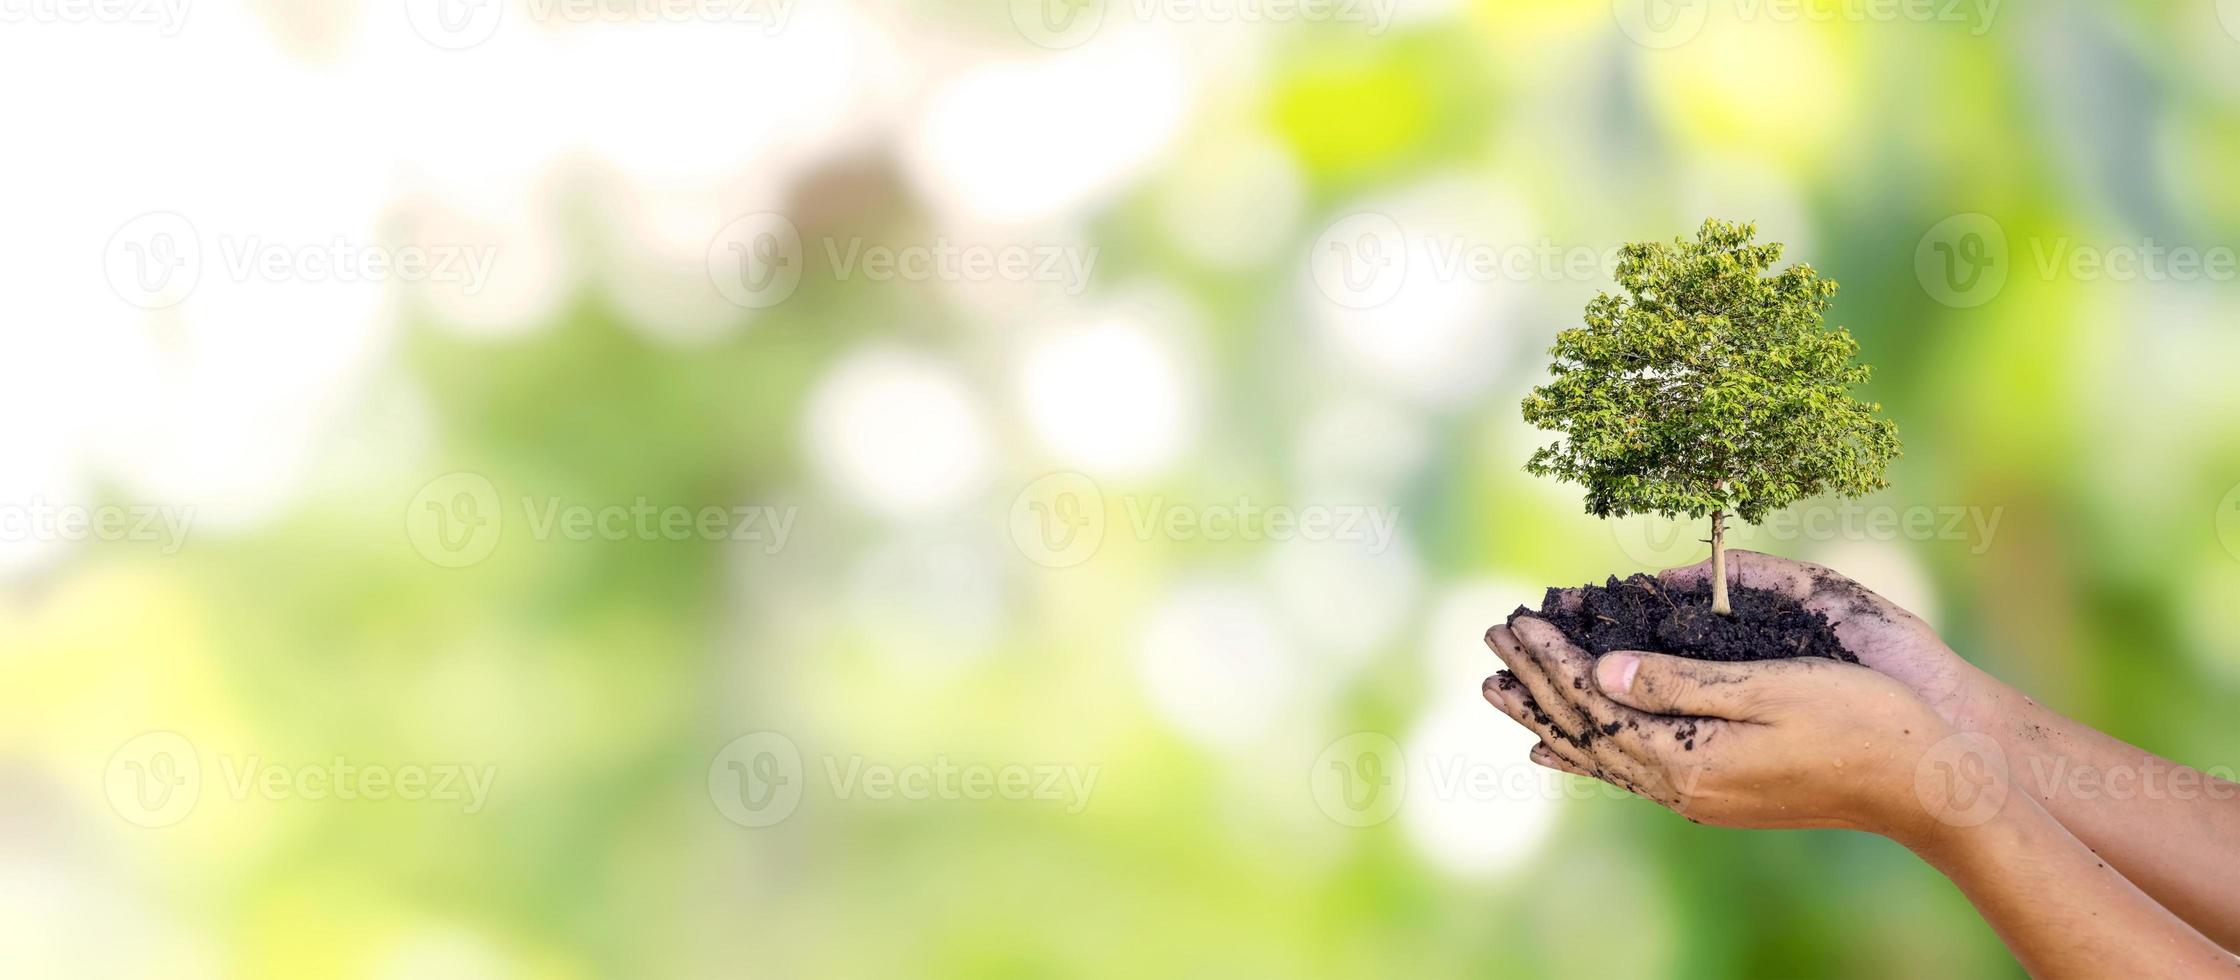 bomen worden in menselijke handen op de grond geplant met natuurlijke groene achtergronden, het concept van plantengroei en milieubescherming. foto